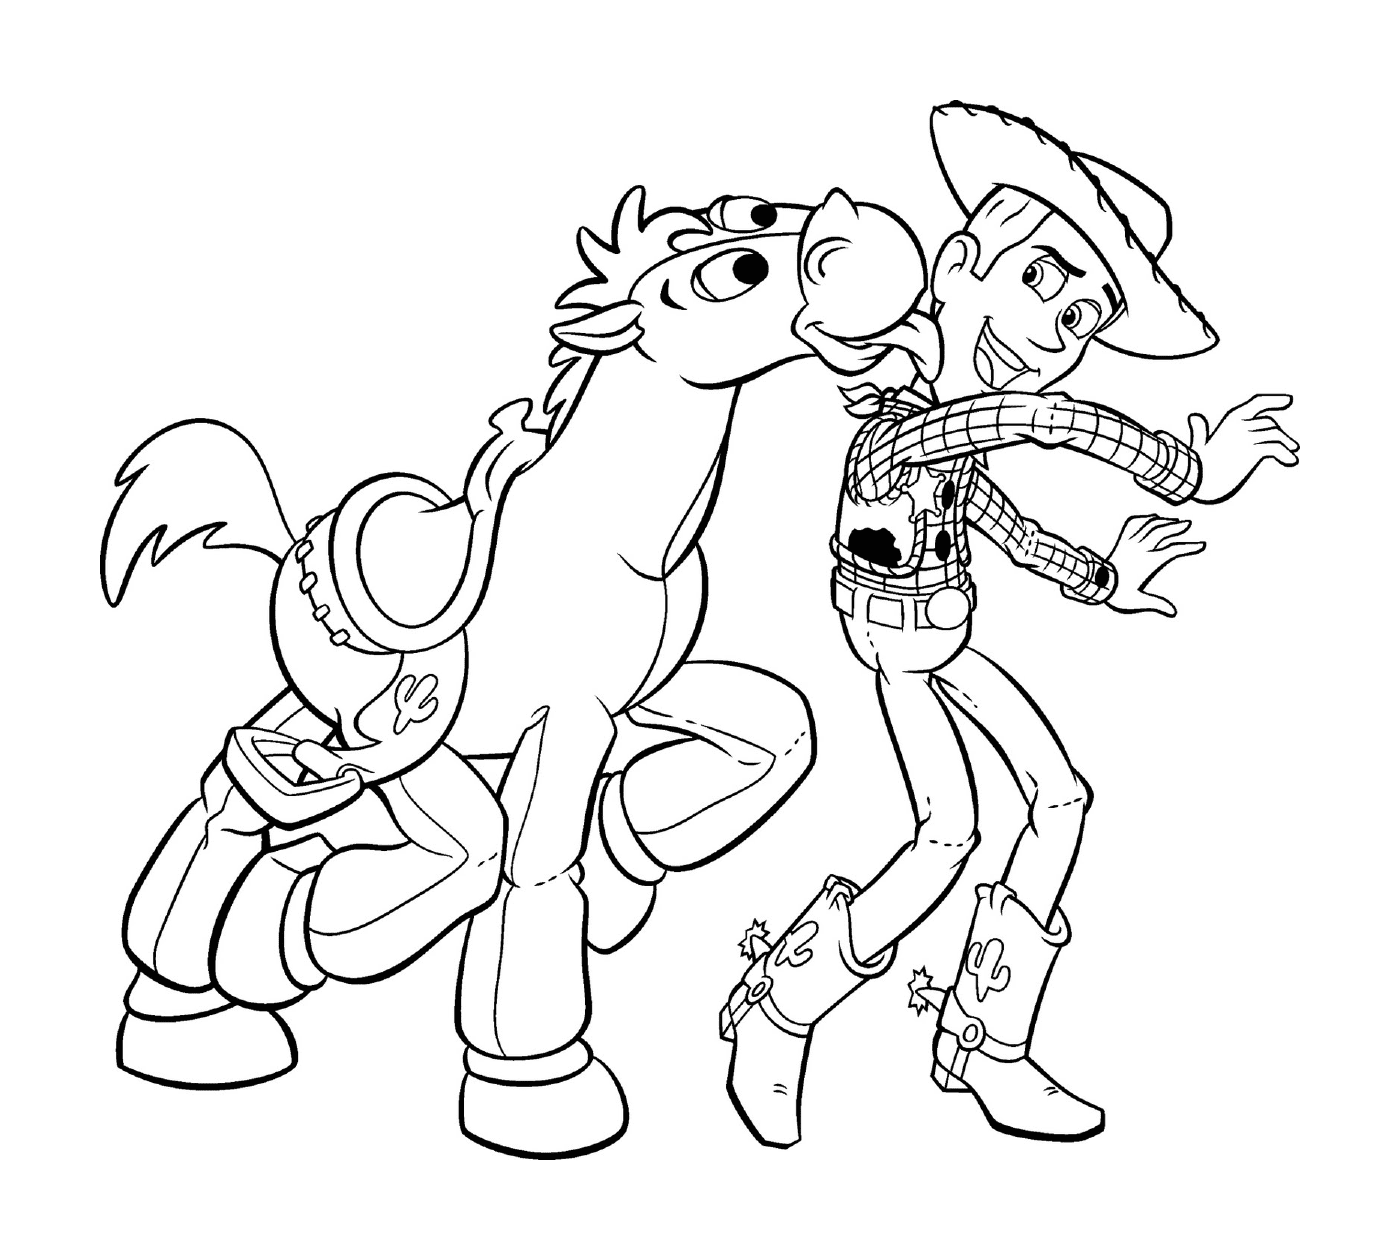   Woody et Bullseye s'amusent joyeusement 